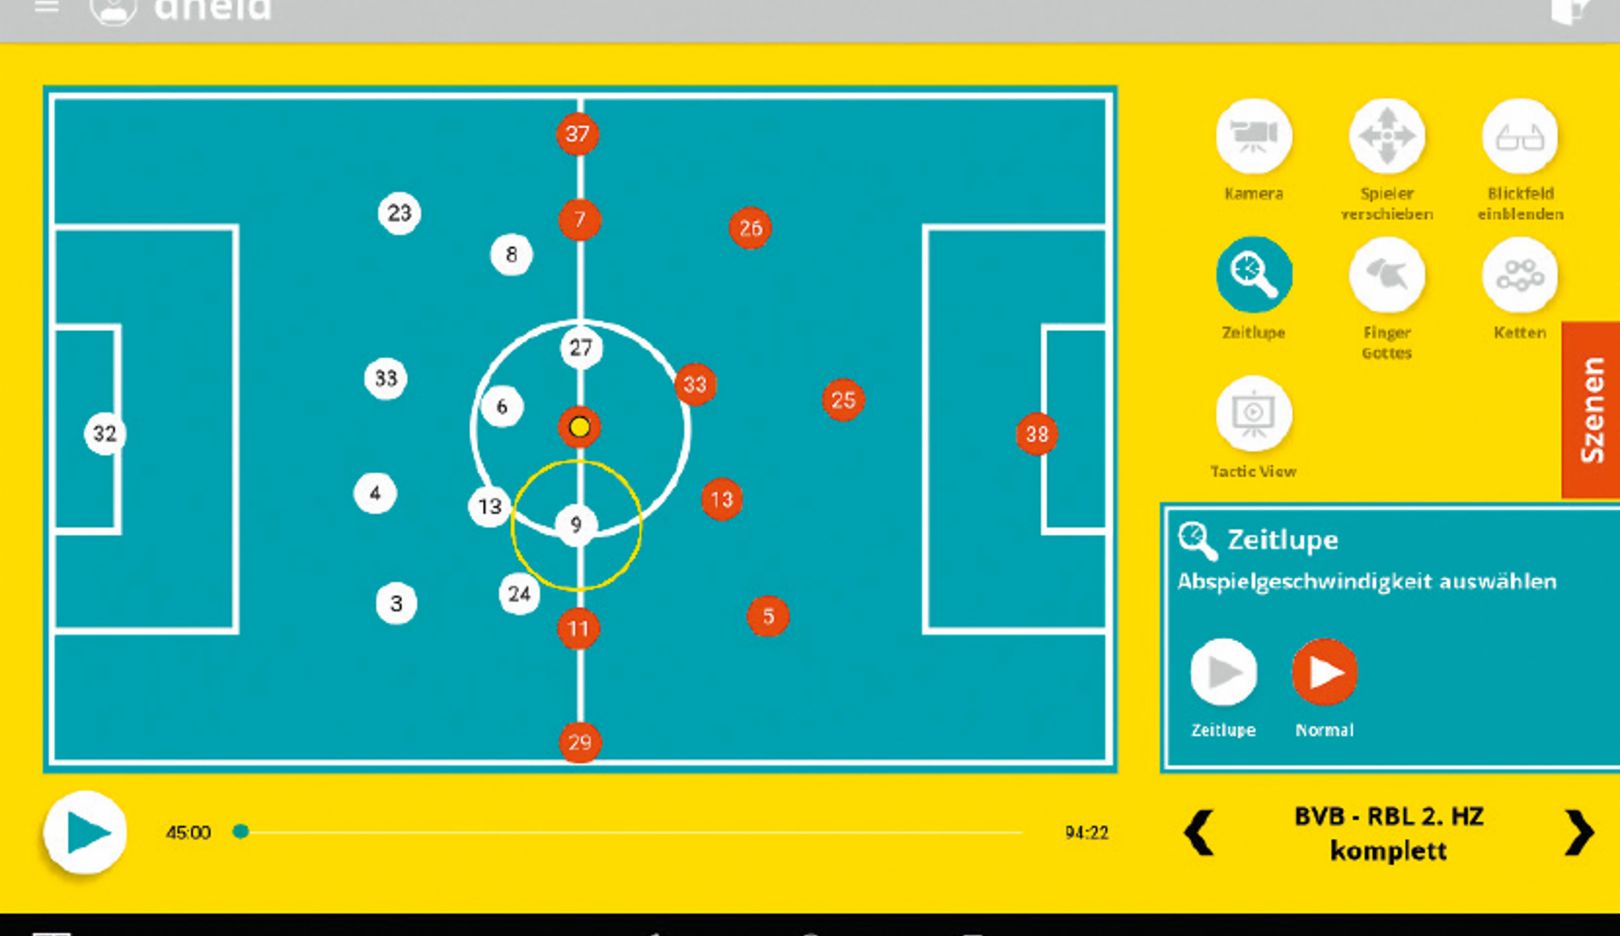 Preparação focada no próximo adversário:  é possível simular sistemas de jogo no Soccerbot360. Dessa forma o jogador aprende a encontrar soluções